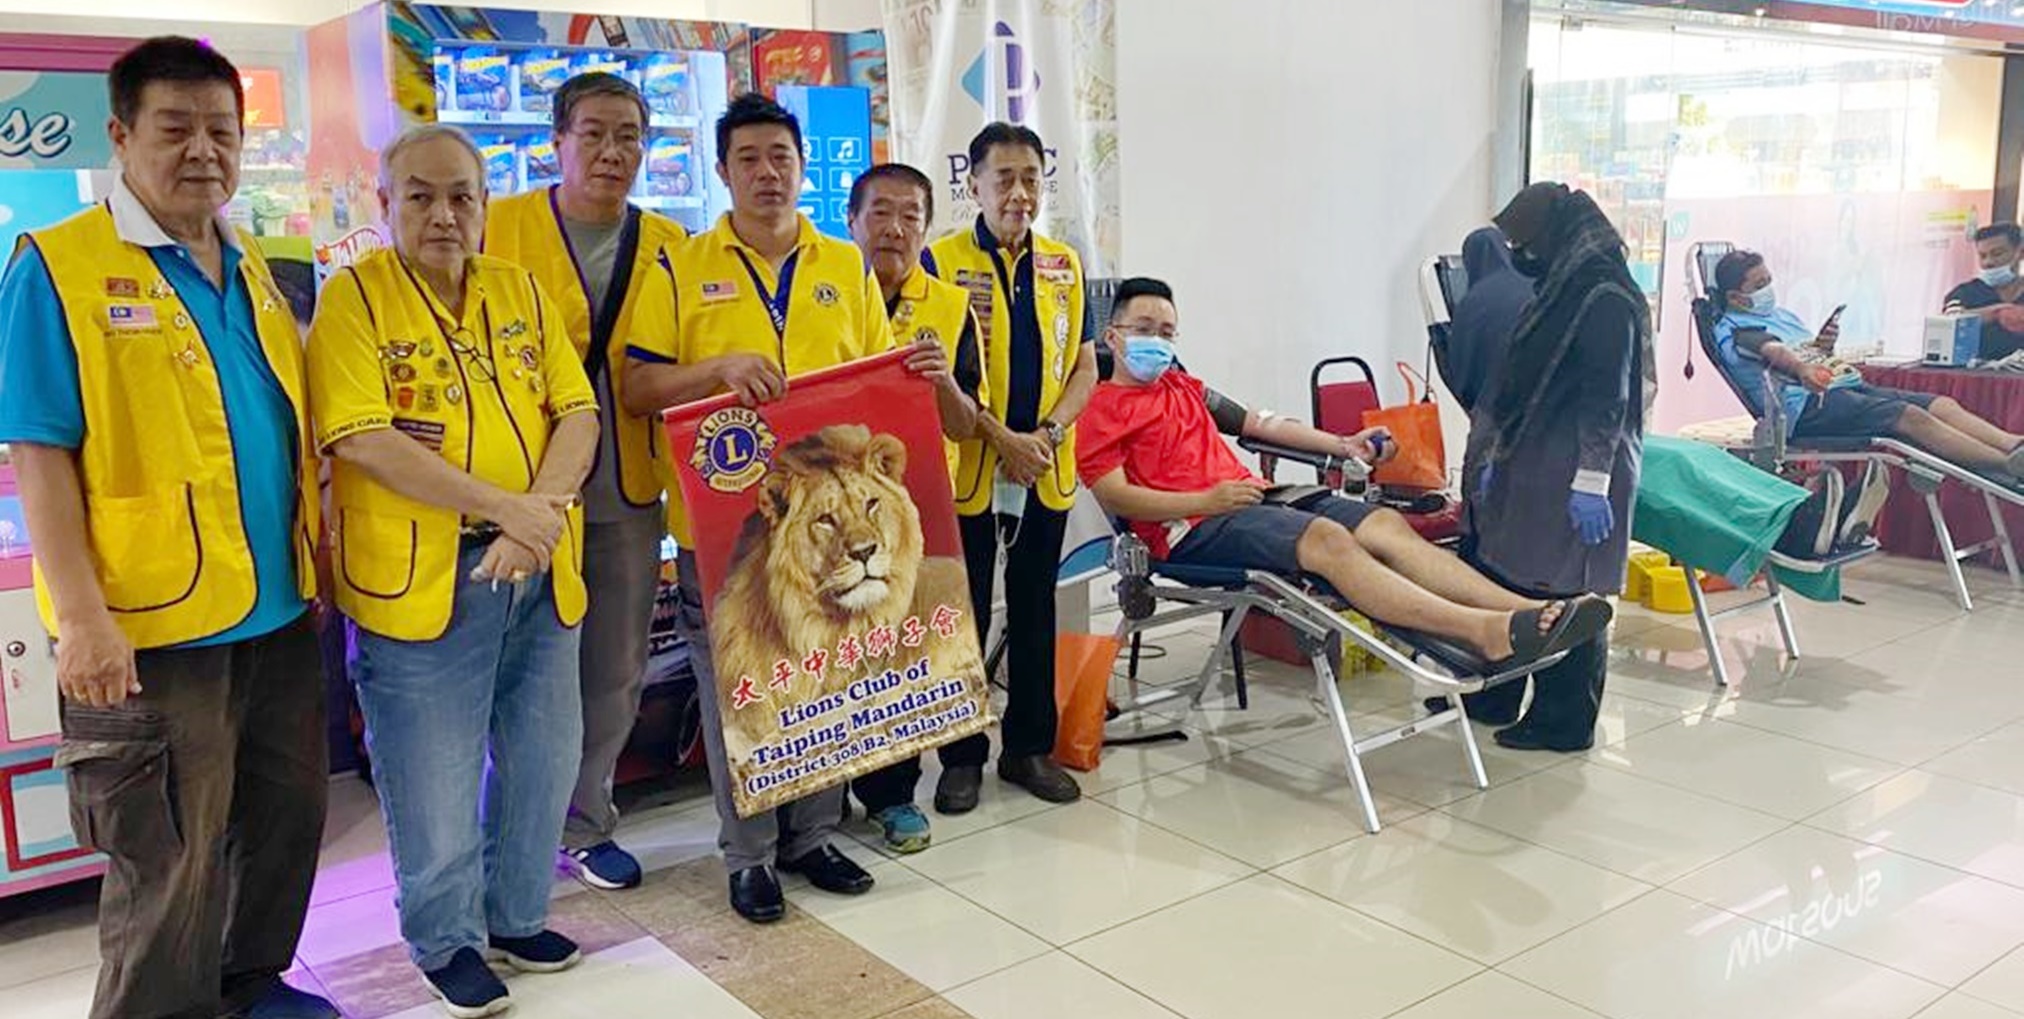 霹／太平中华狮子会等组织联办捐血运动共捐得81包血液